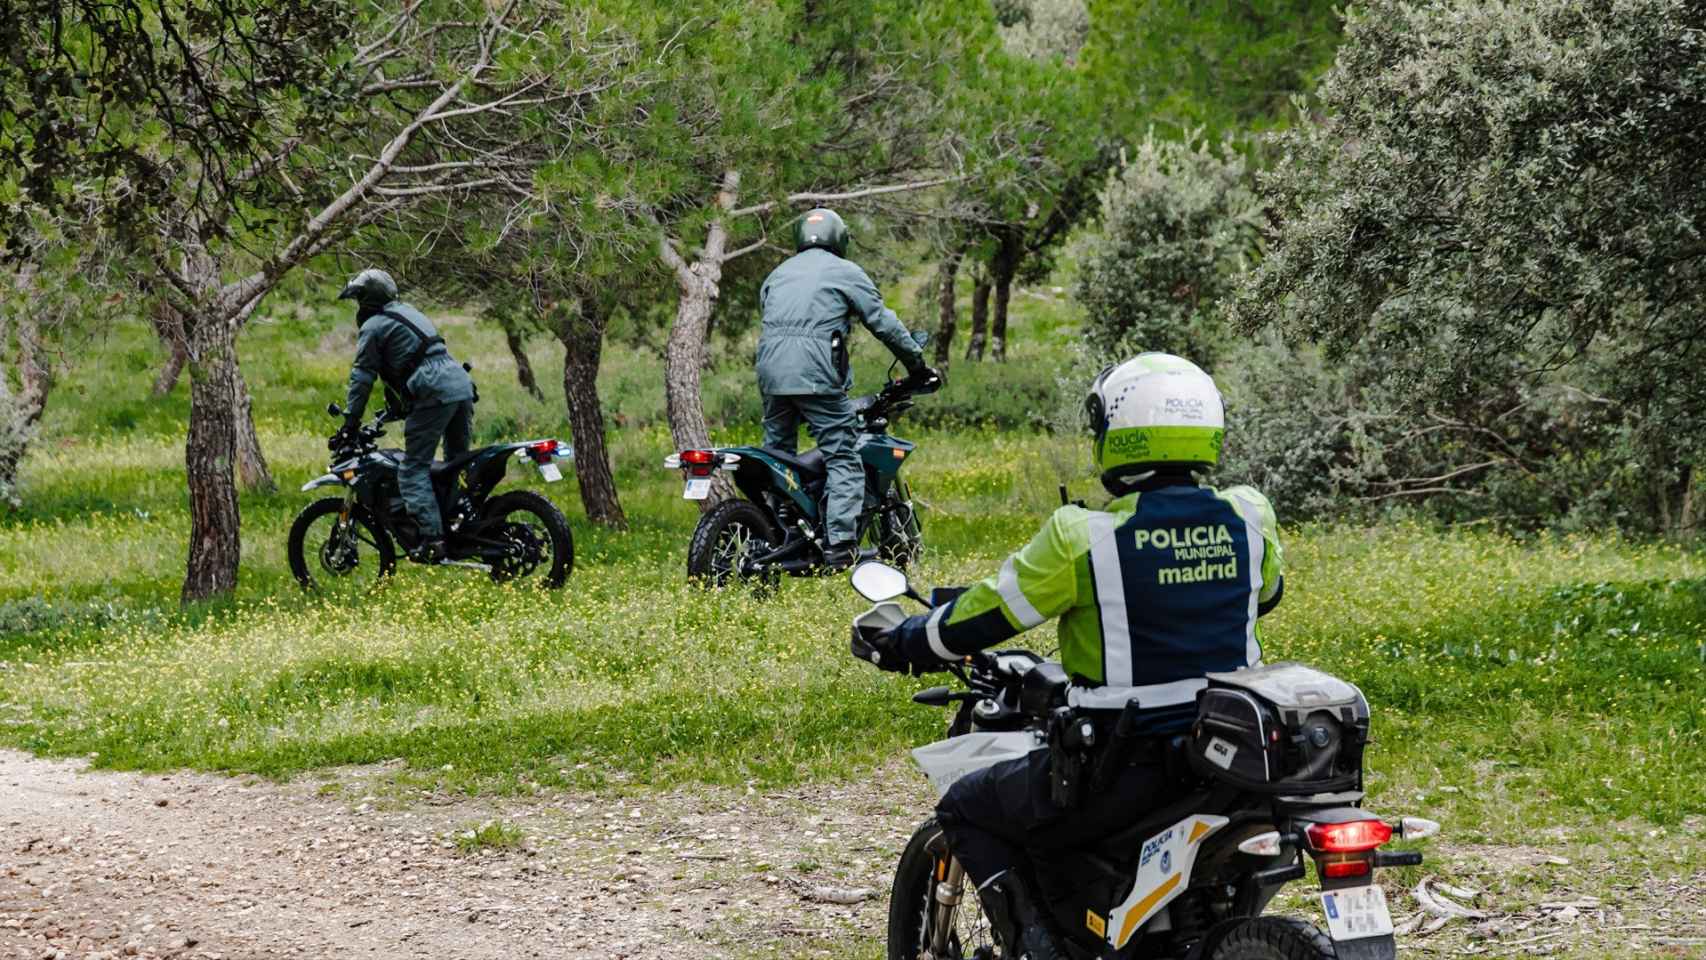 Agentes de la Policía Municipal de Madrid y de la Guardia Civil en un simulacro, en Madrid.